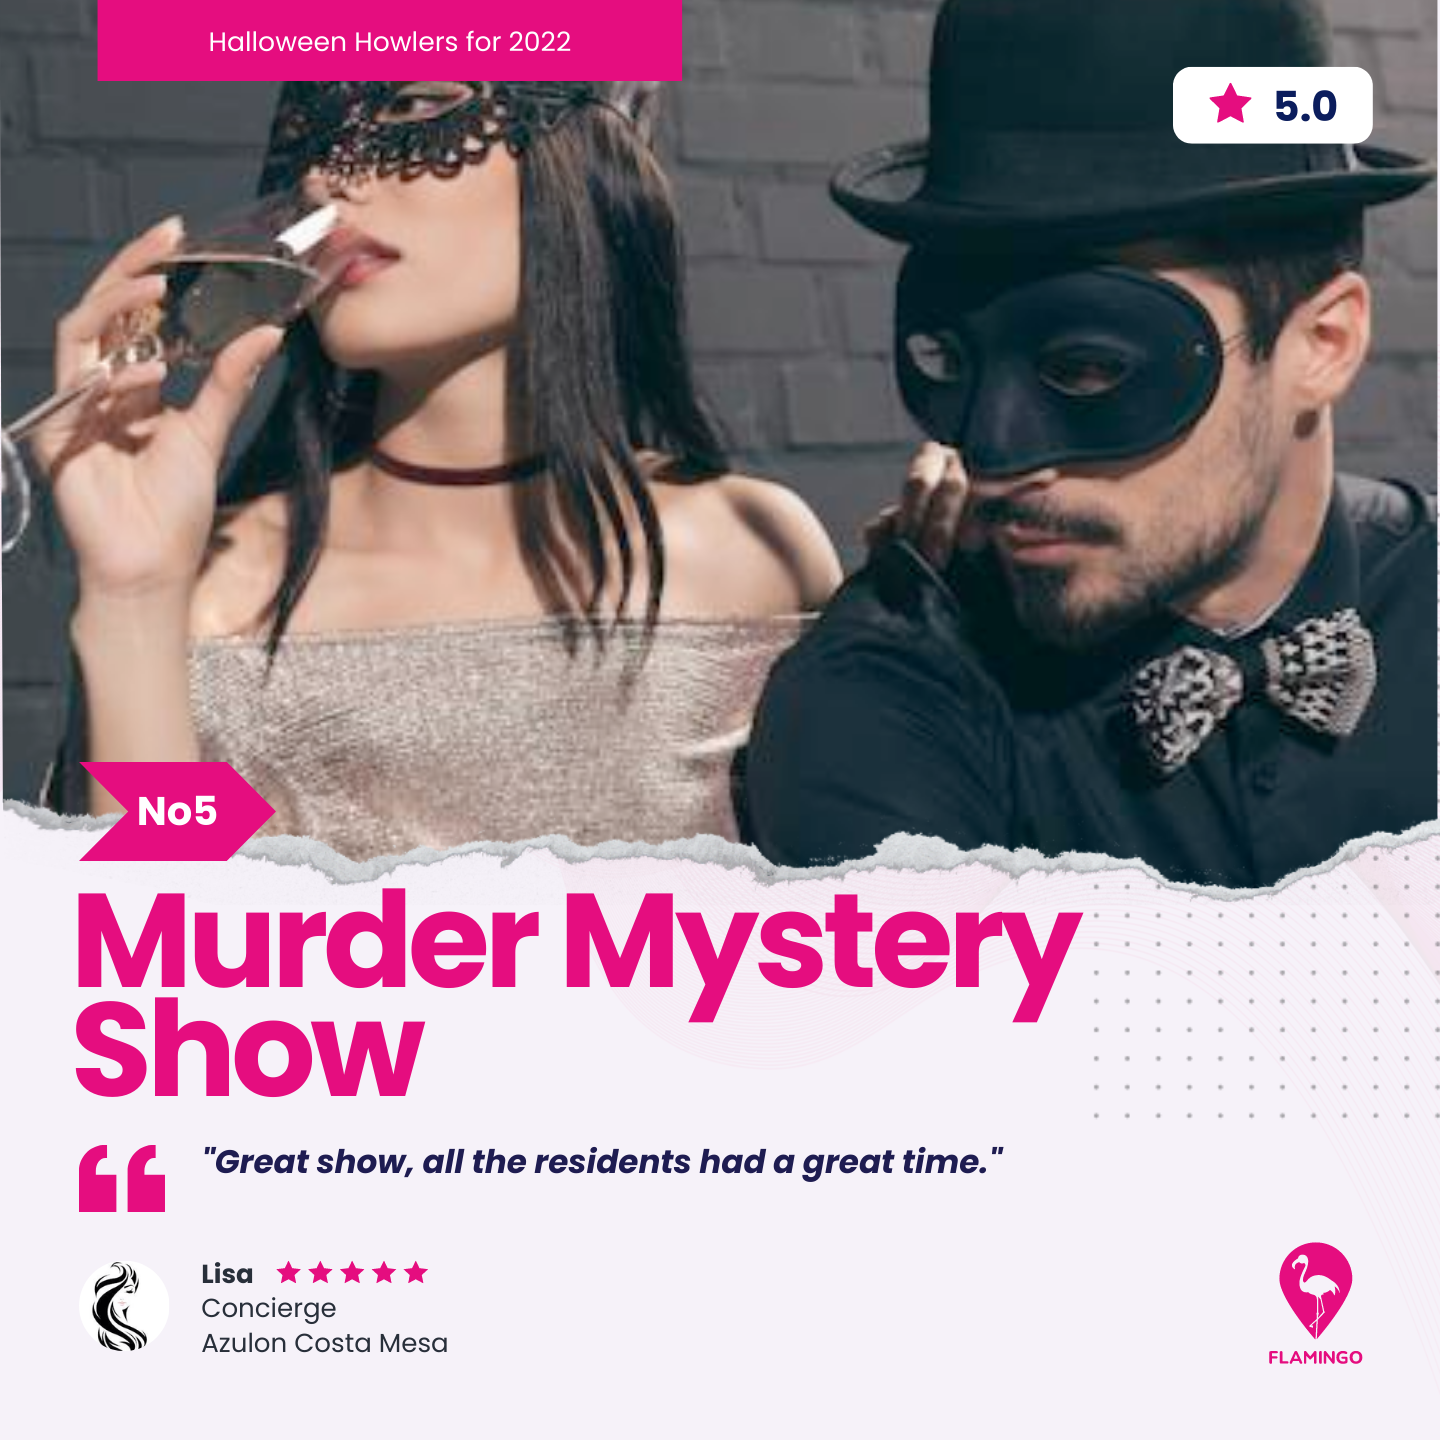 Murder Mystery Show | Halloween Resident Event Ideas